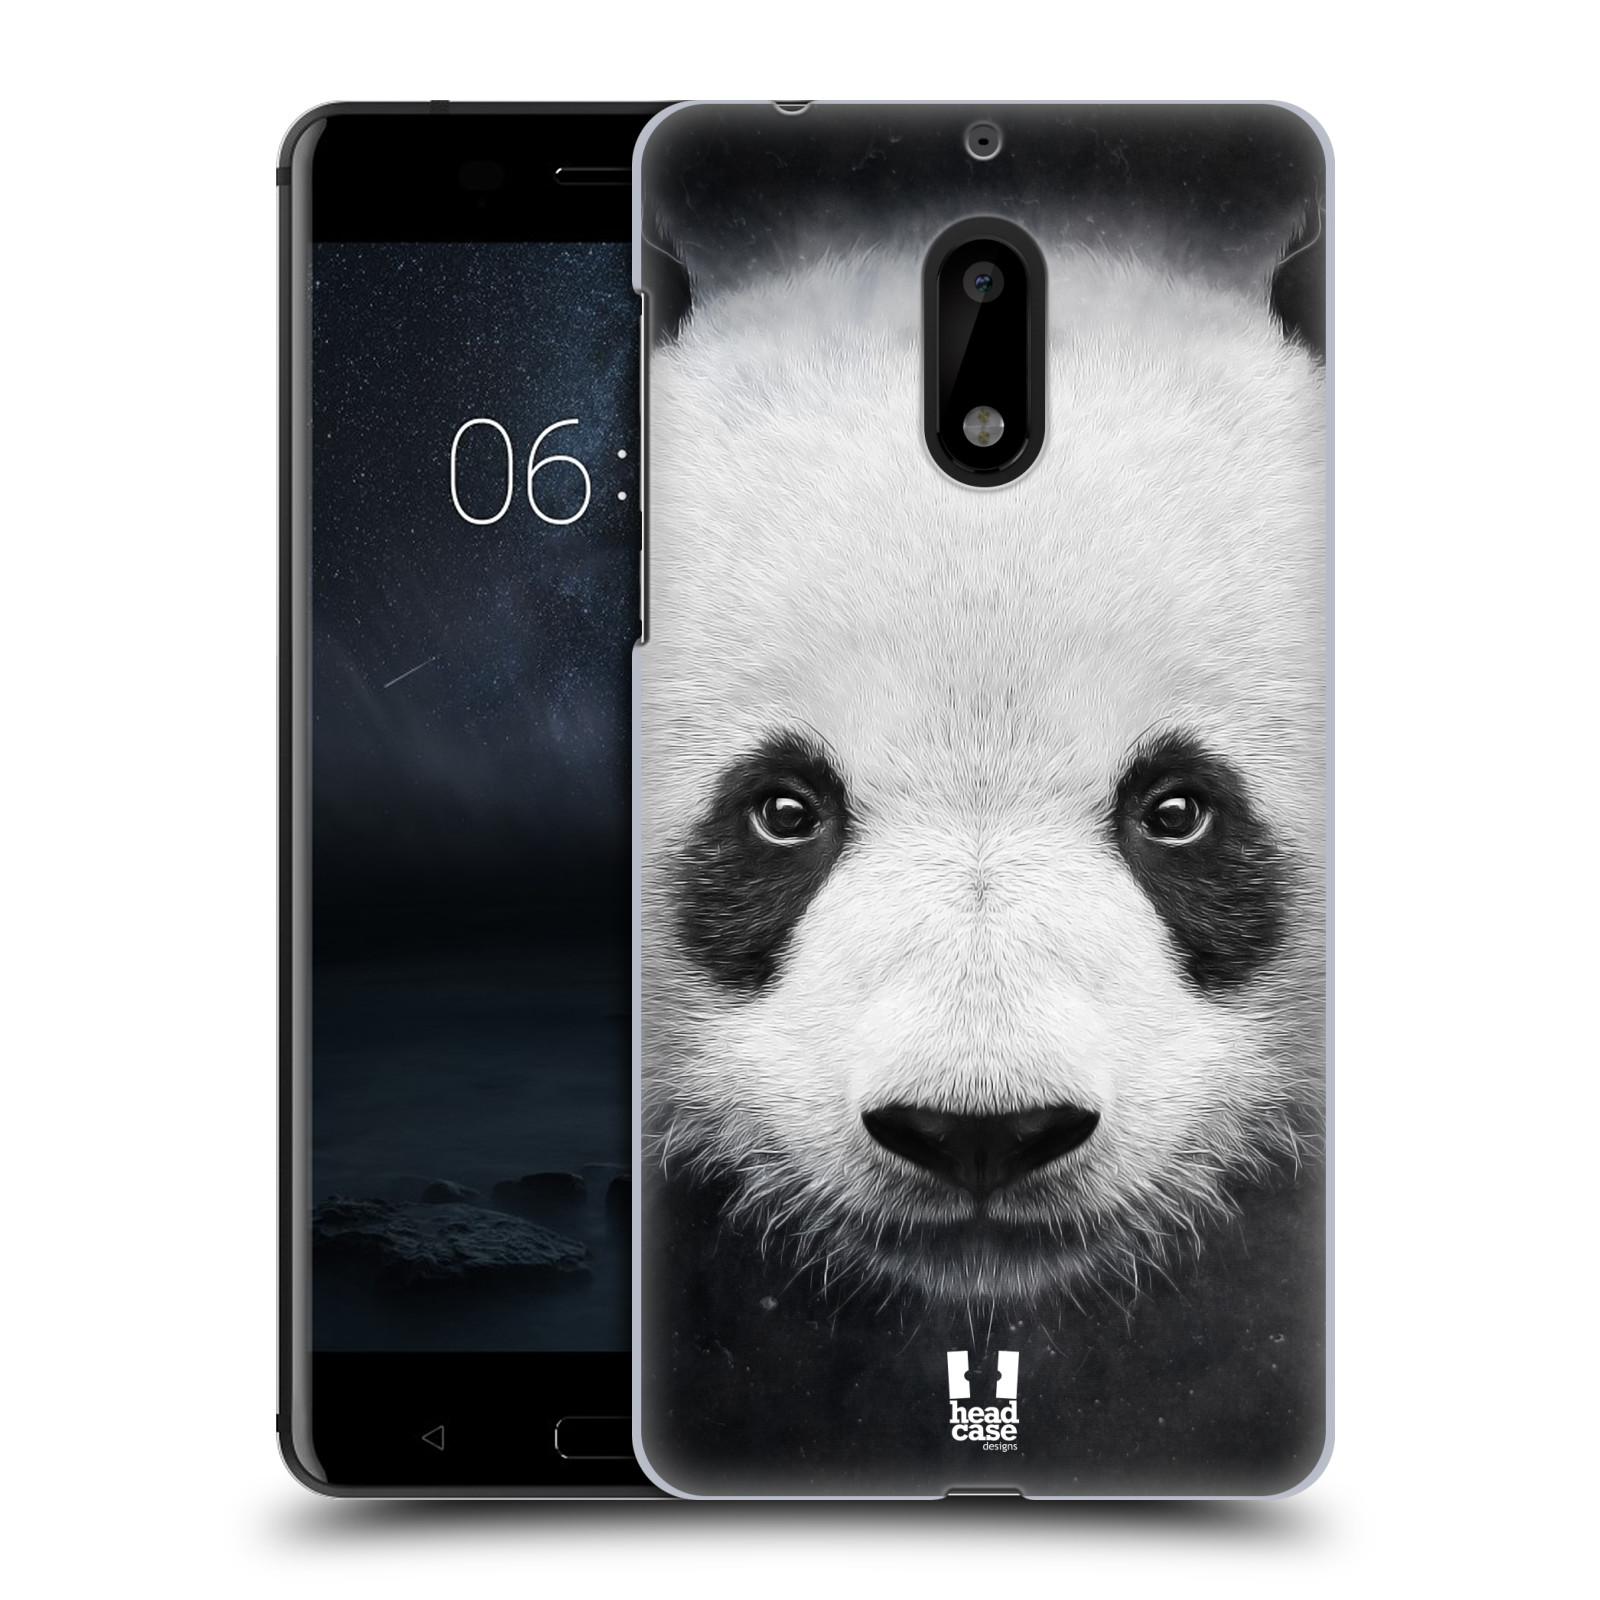 HEAD CASE plastový obal na mobil Nokia 6 vzor Zvířecí tváře medvěd panda